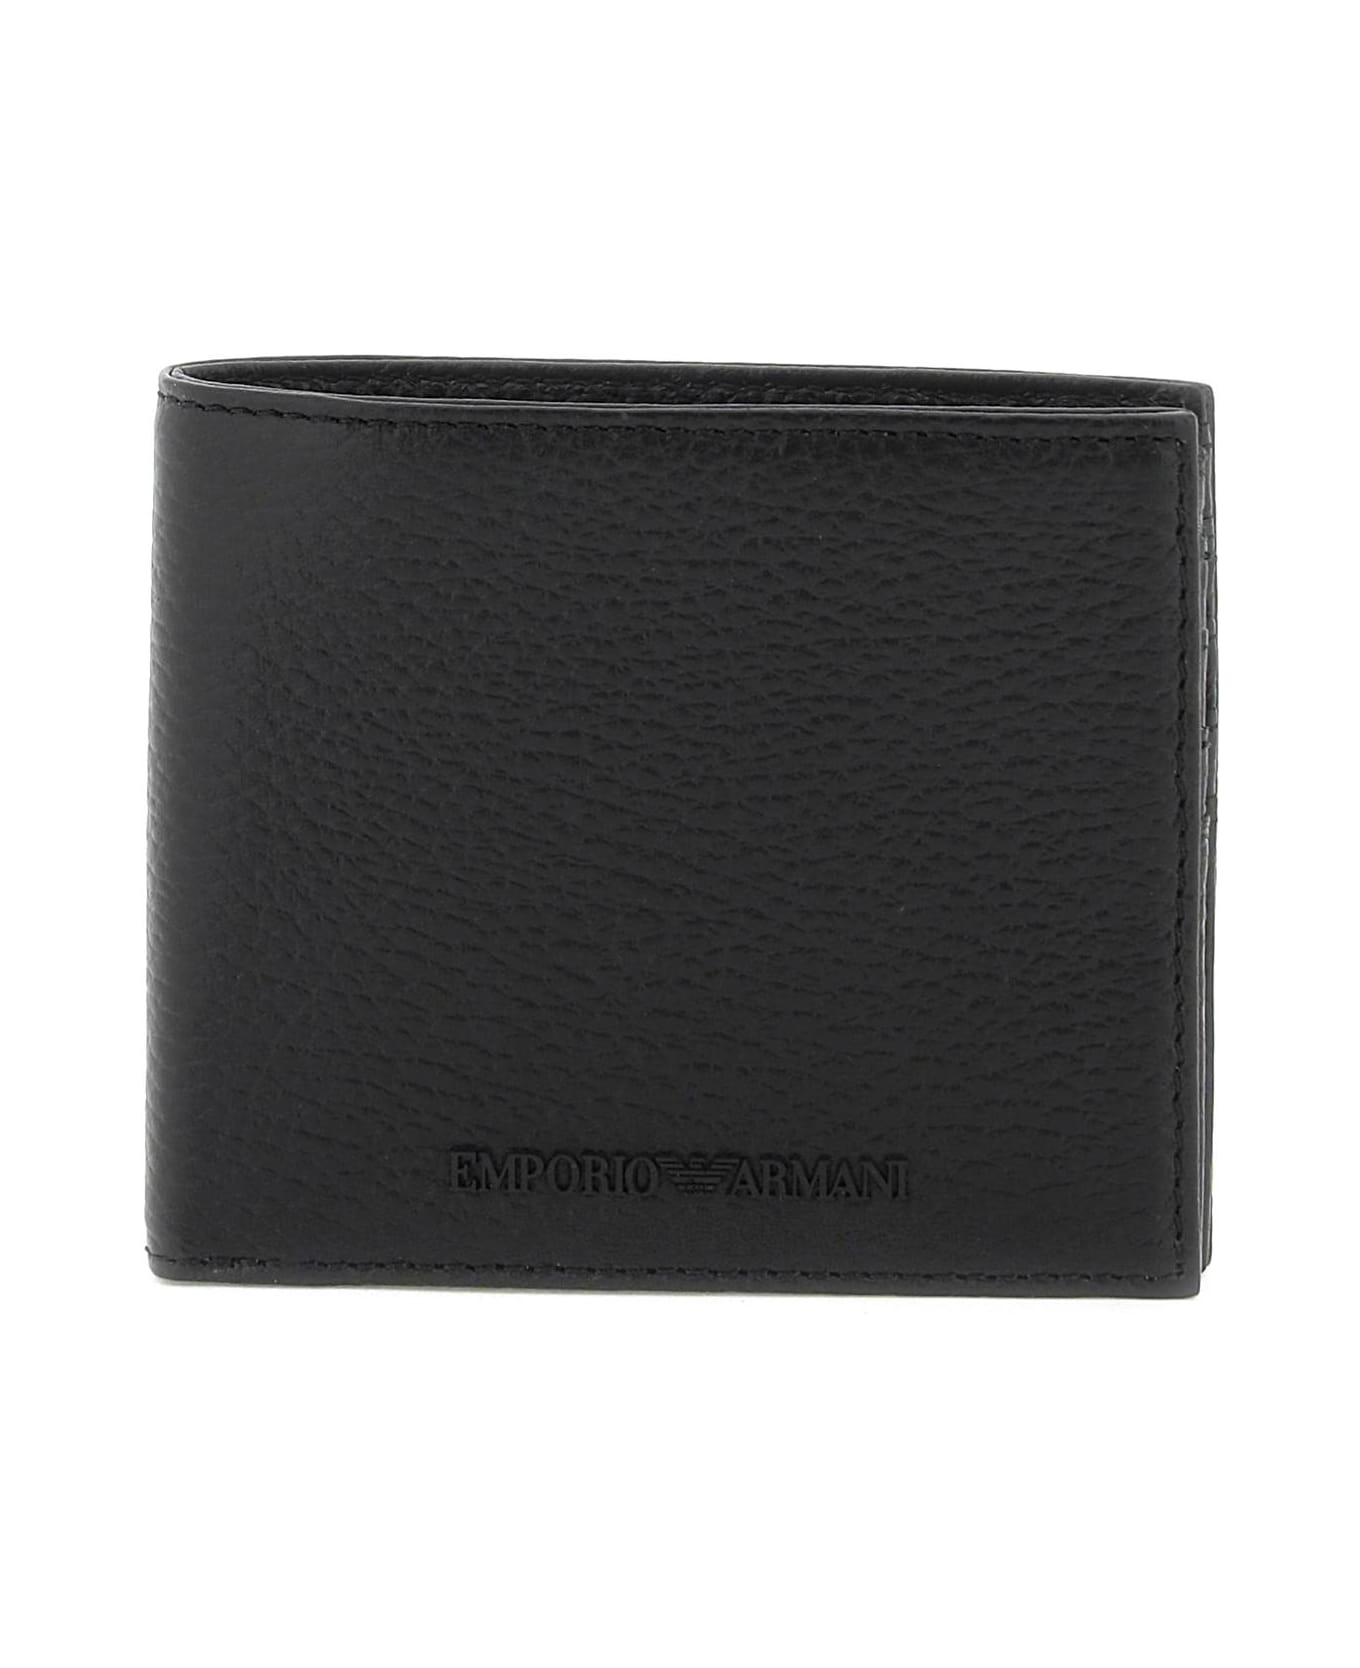 Emporio Armani Grained Leather Wallet - NERO (Black)